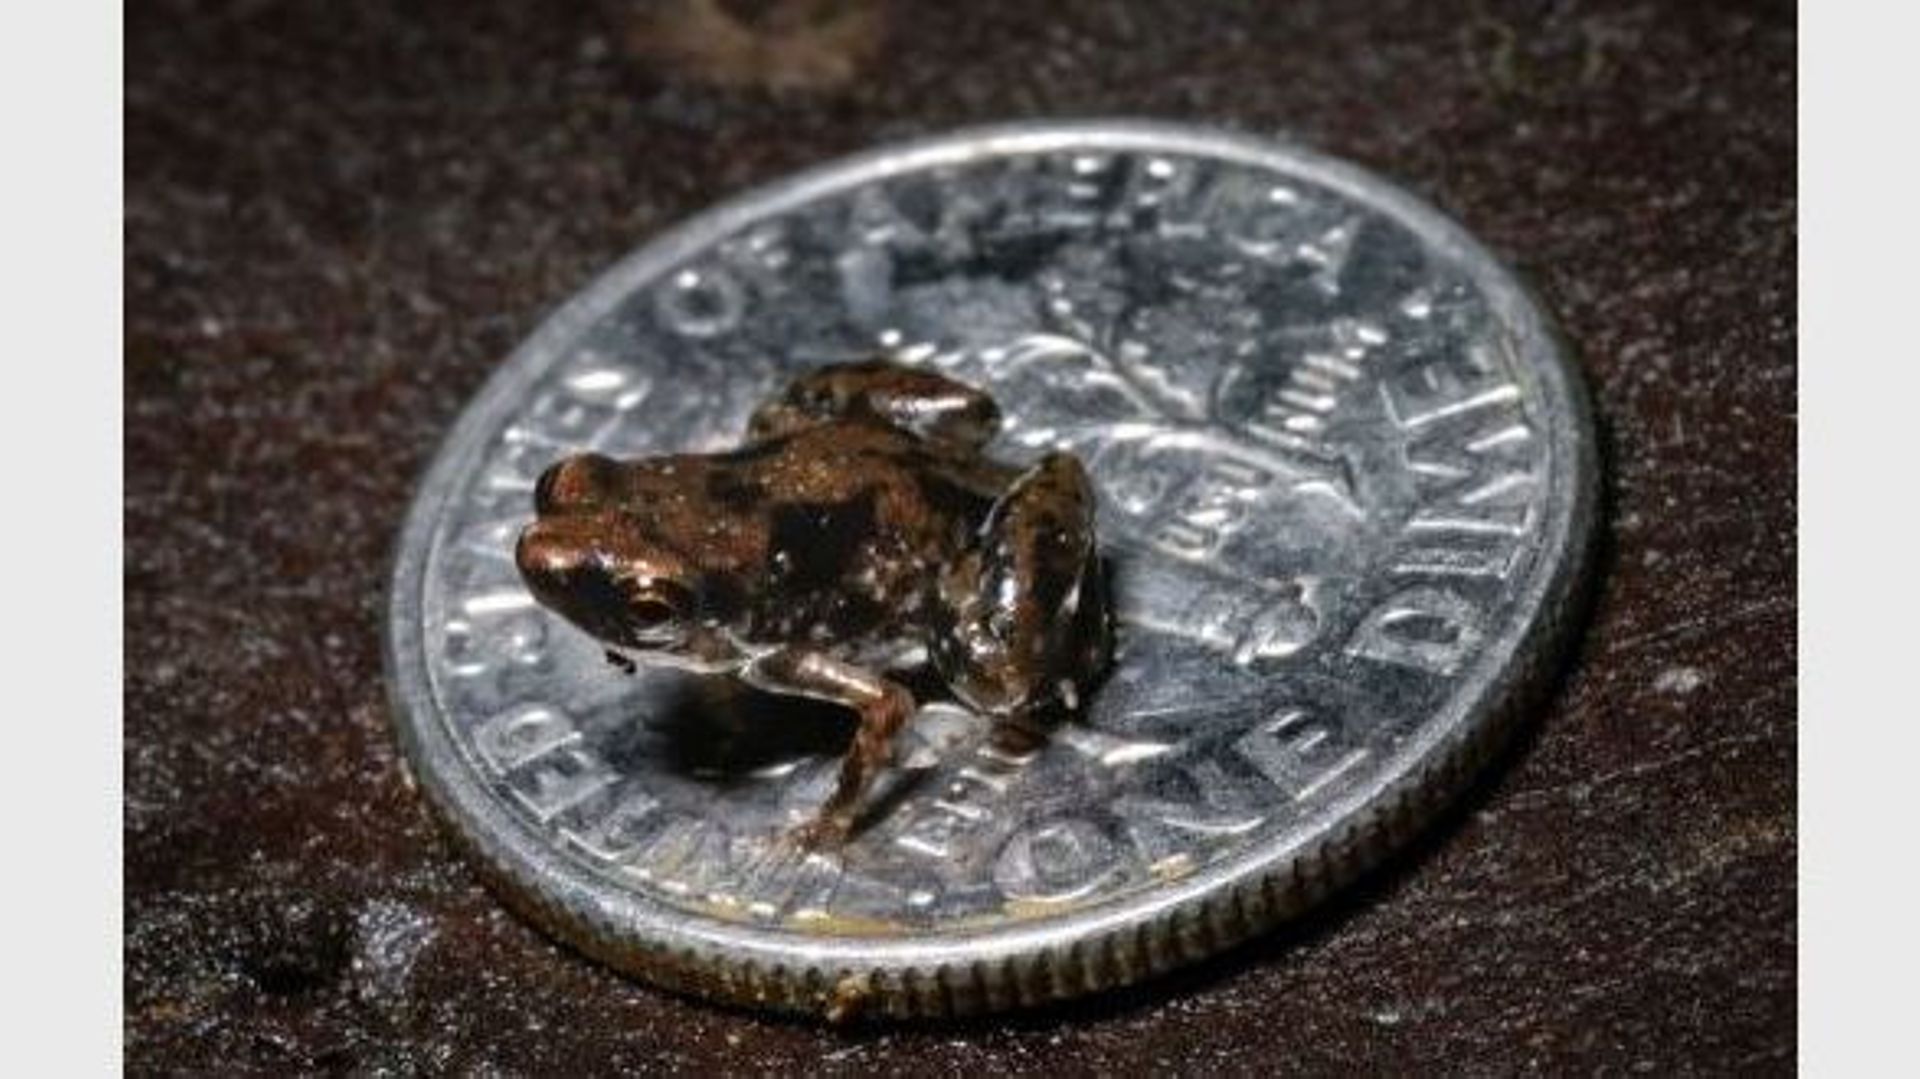 Une grenouille, plus petit vertébré connu à ce jour sur la planète, sur une pièce d'un cent américain